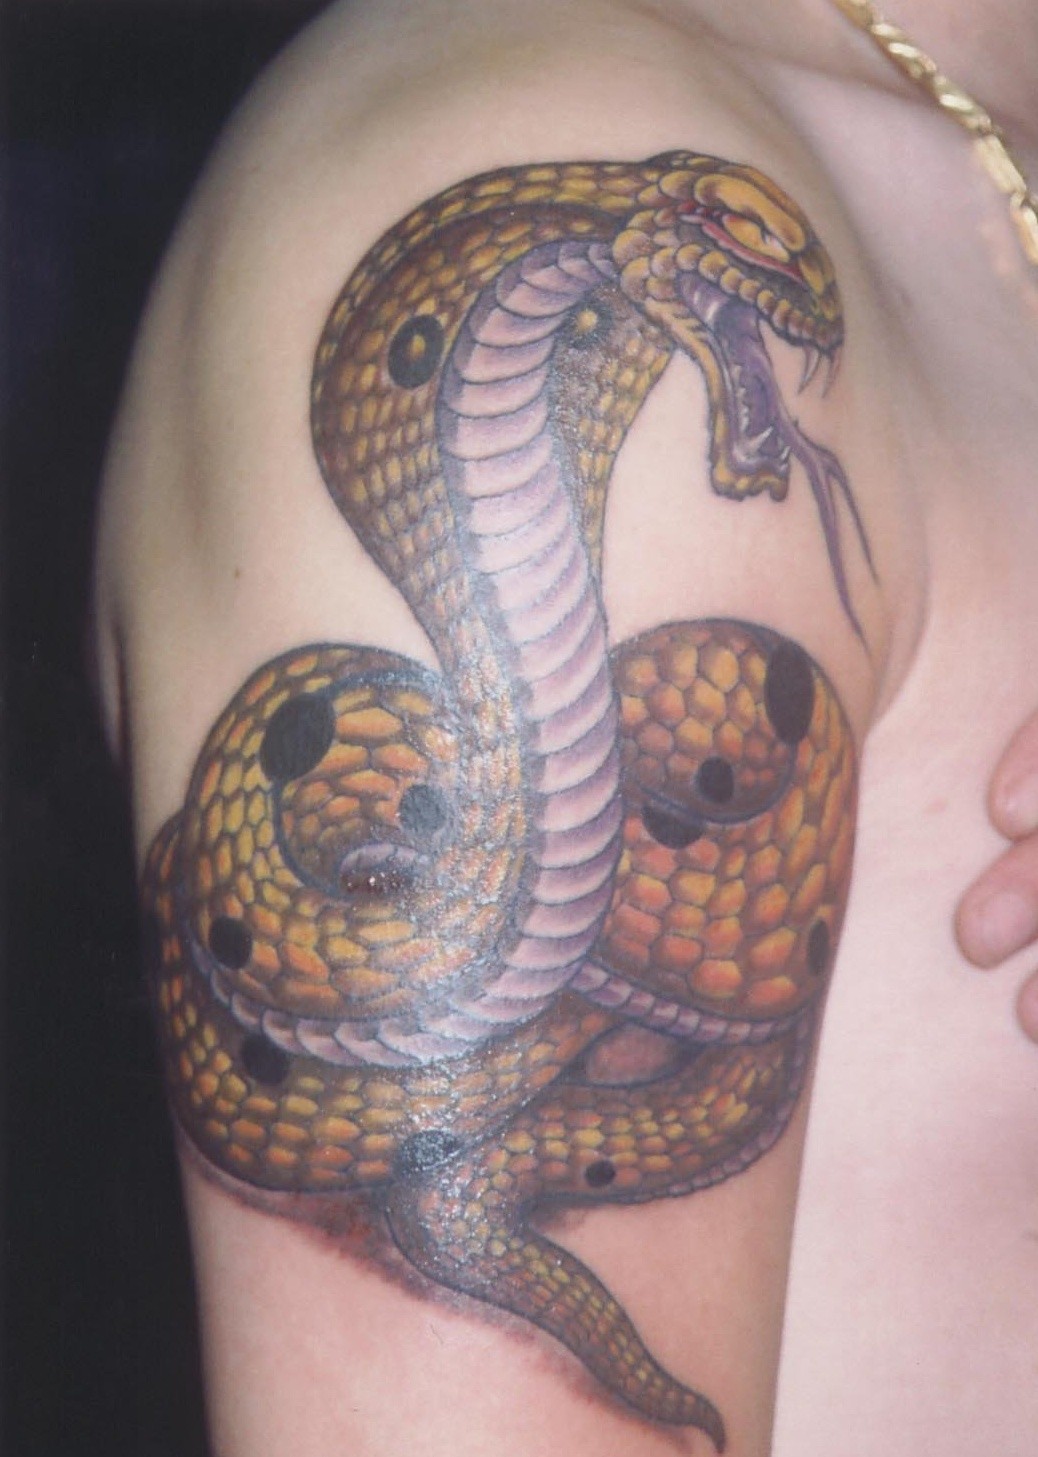 大臂上帅气的蛇纹身